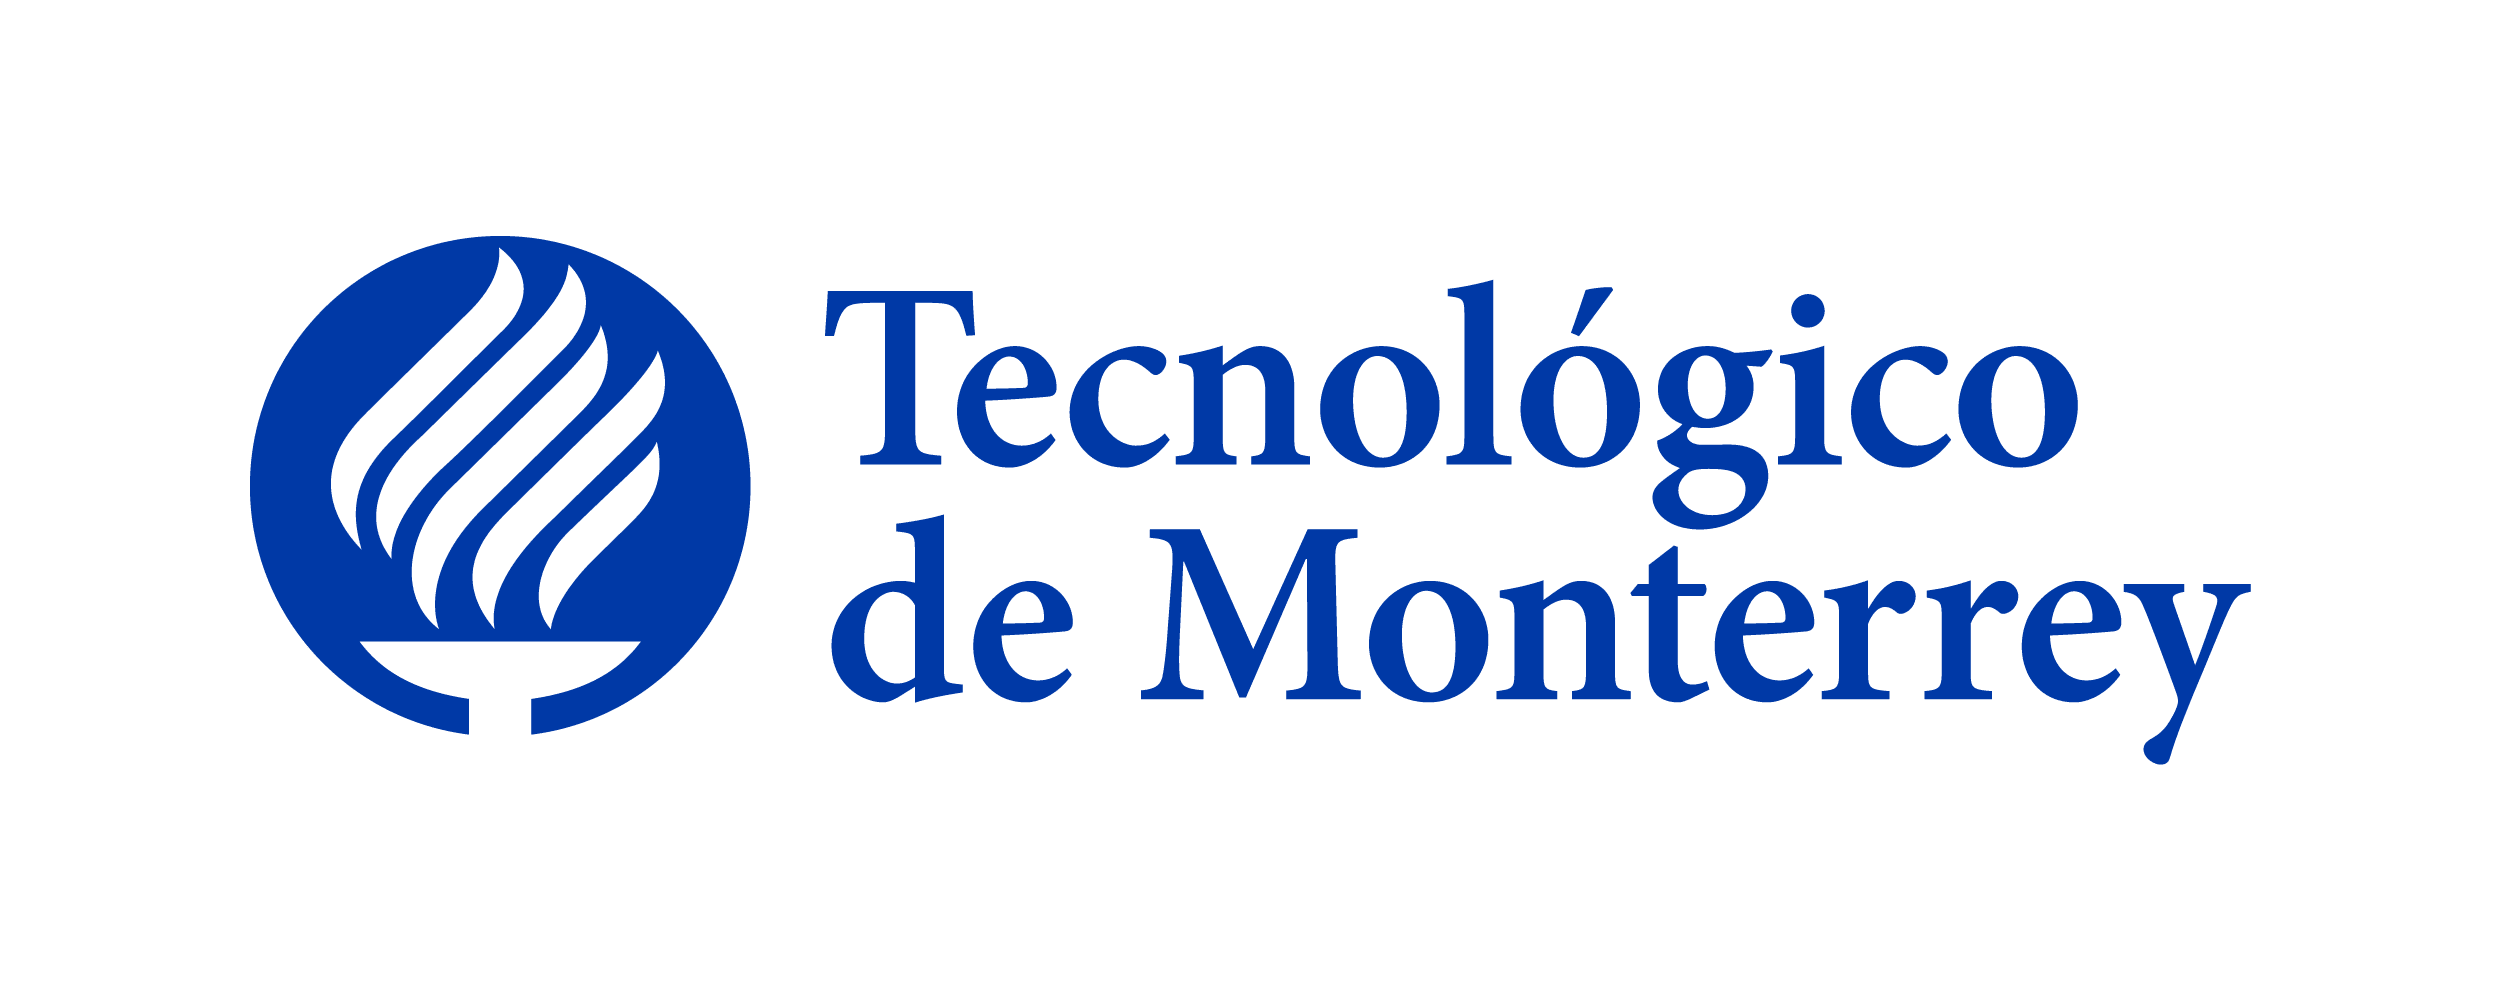 Tecnolgico de Monterrey